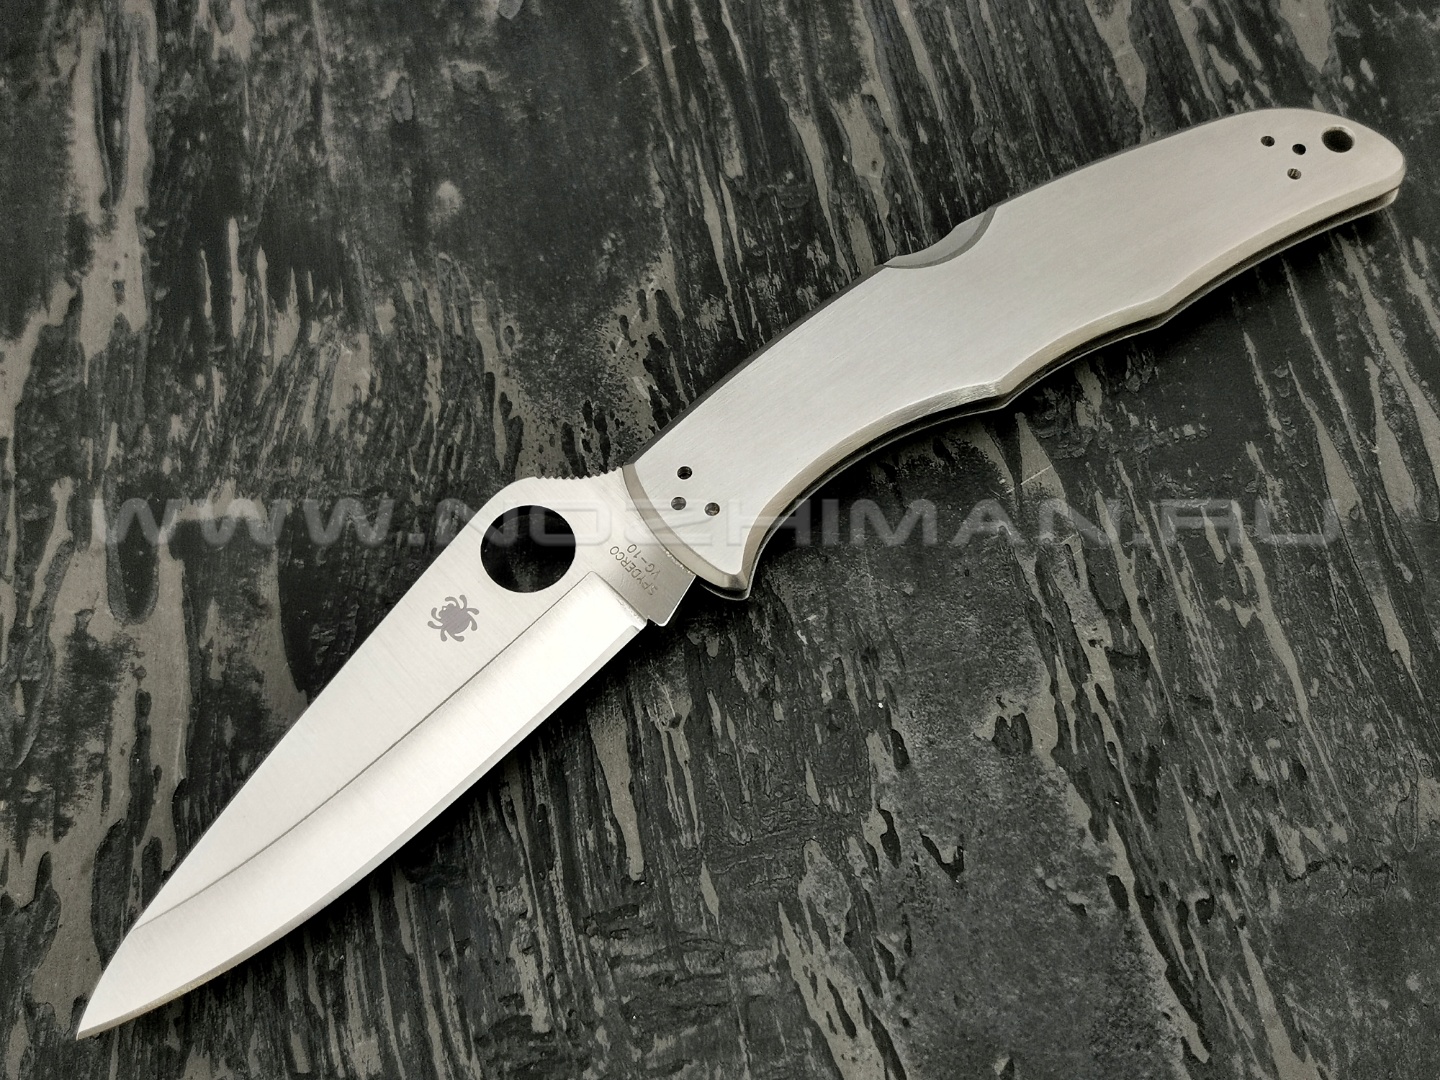 Нож Spyderco Endura 4 Stainless Plain Edge C10P, сталь VG-10 satin, рукоять Stainless Steel